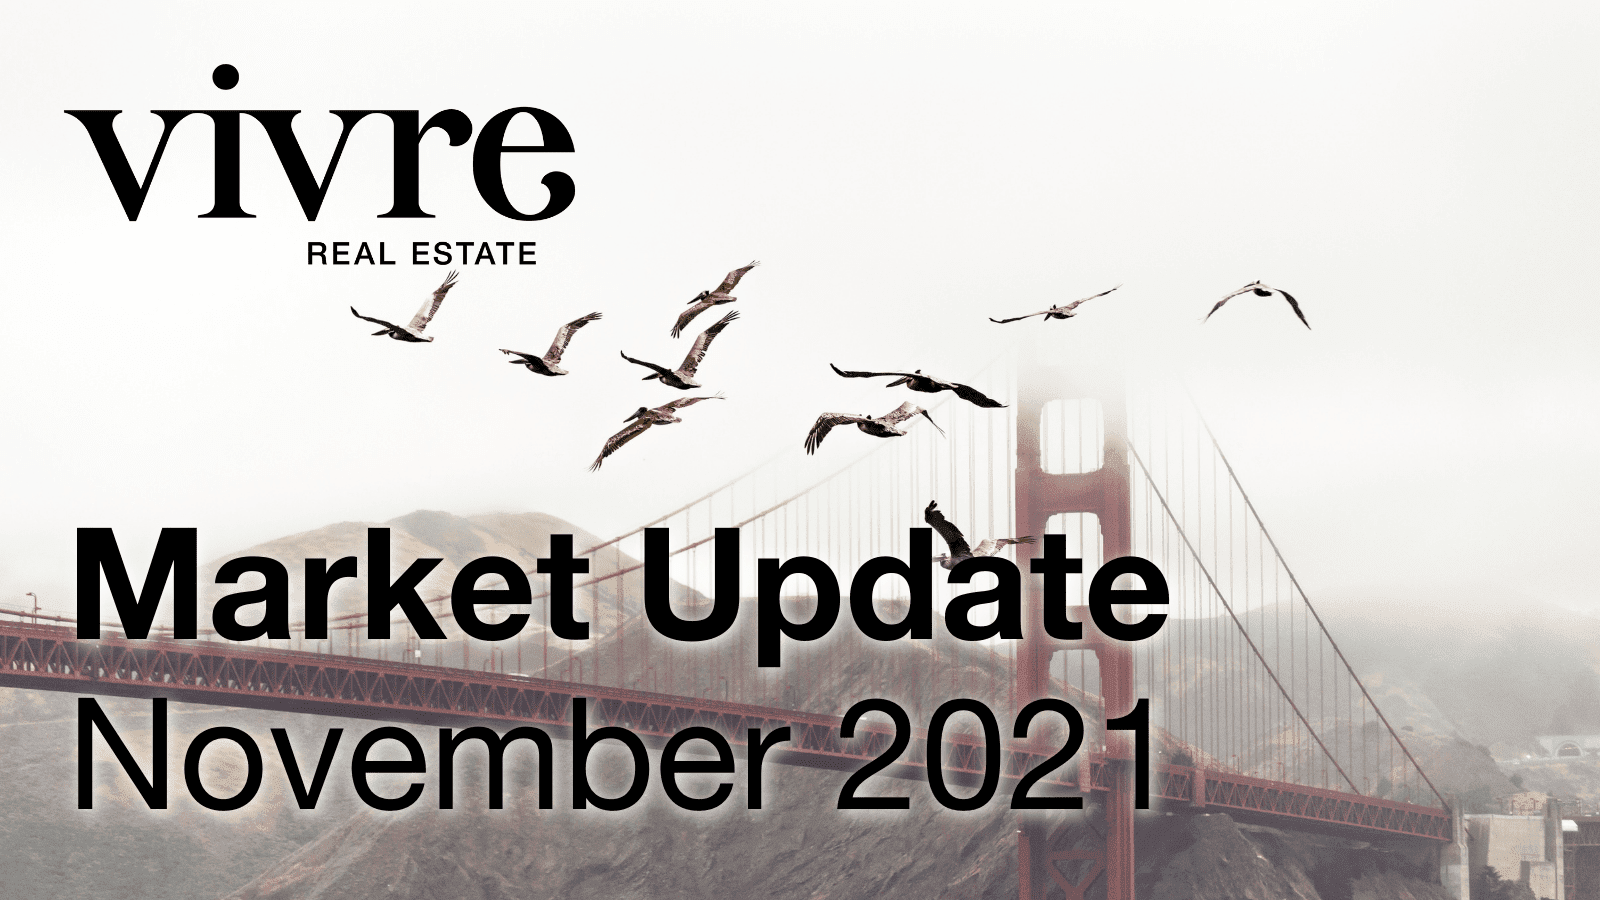 san francisco real estate market update november 2021